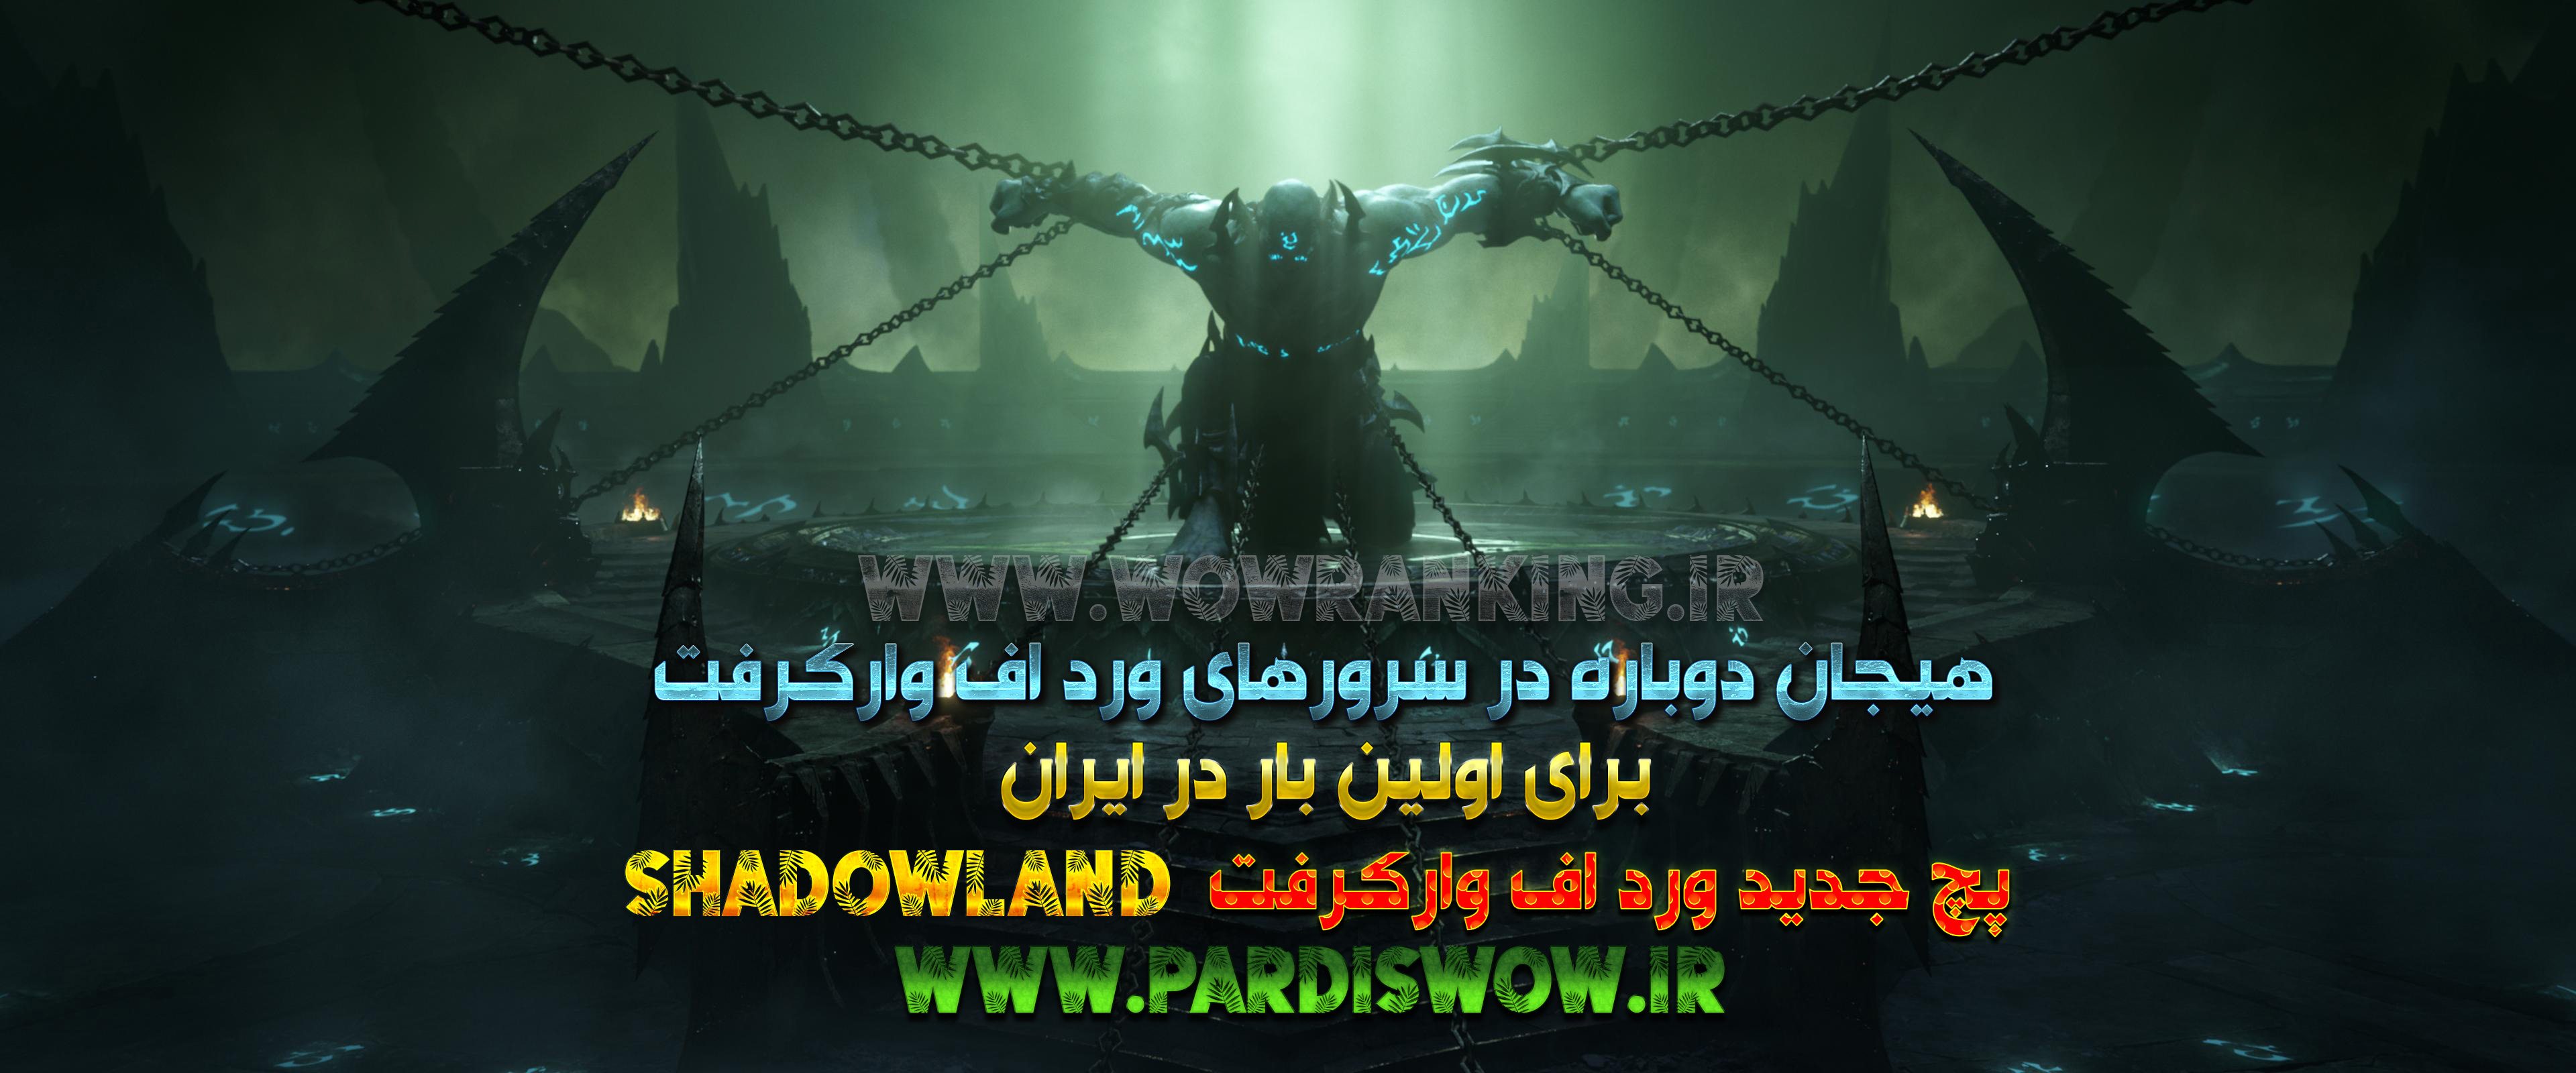 برای اولین بار در سرورهای ورد اف وارکرفت ایران پچ Shadowlands 9.0.2 در سرور PARDISWOW